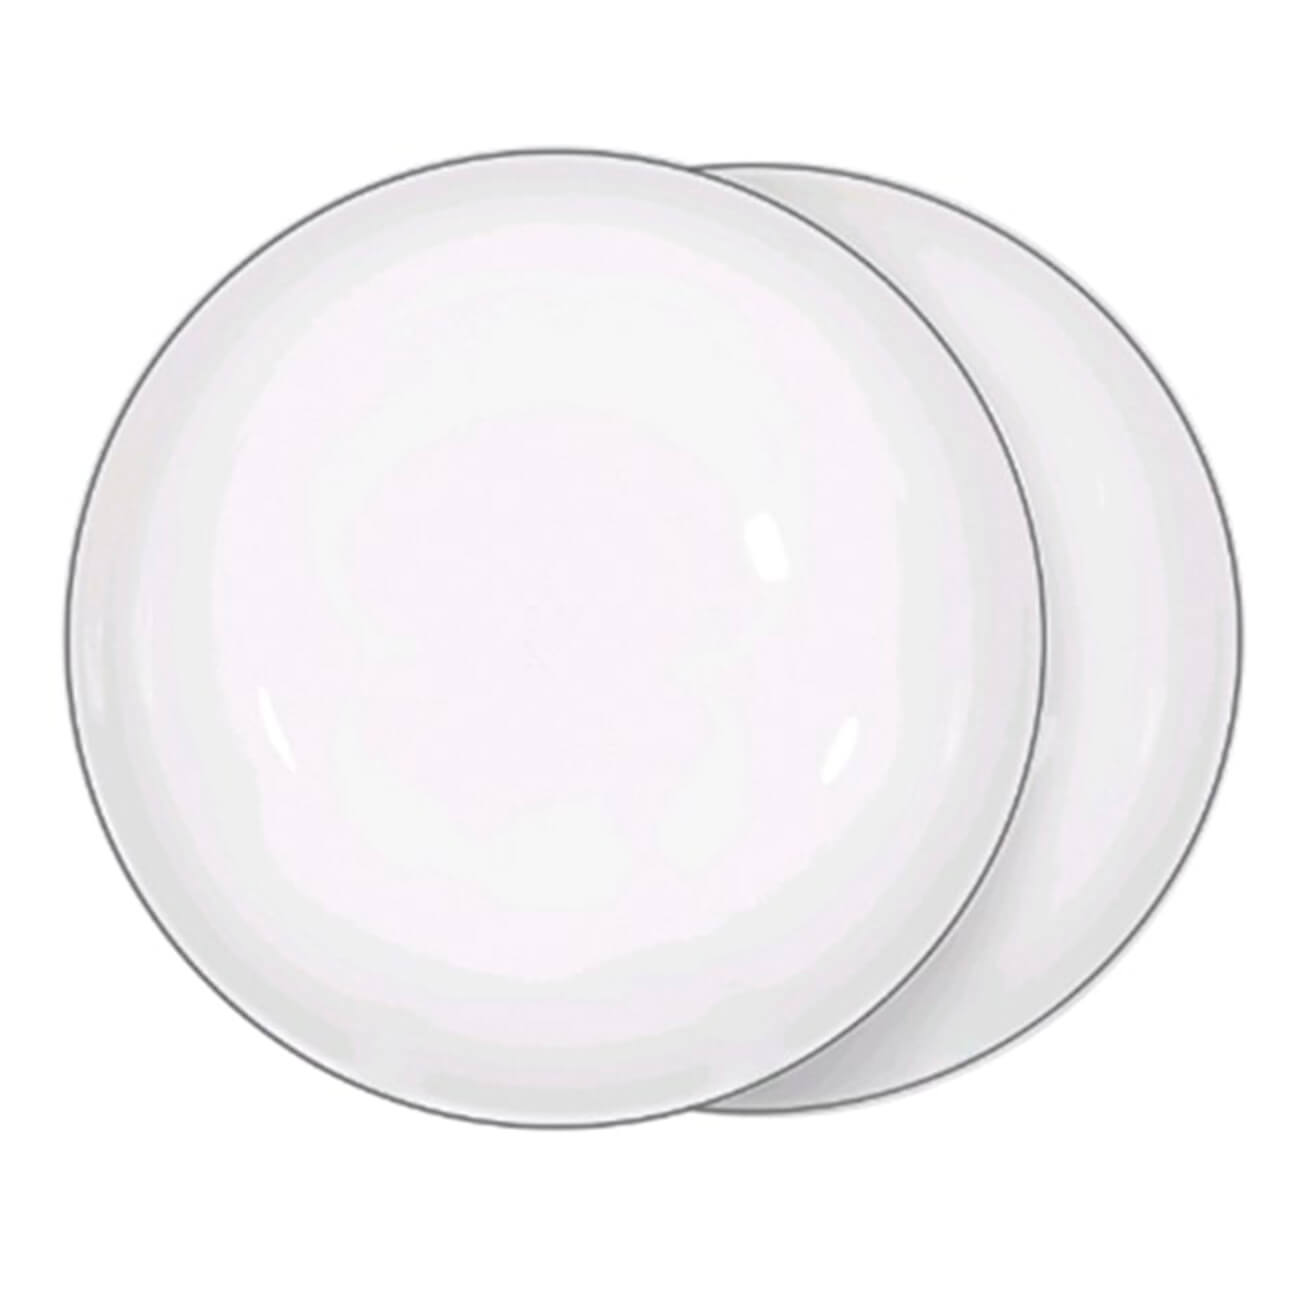 тарелка суповая 20х5 см 2 шт фарфор f белая ideal silver Тарелка суповая, 20х5 см, 2 шт, фарфор F, белая, Ideal silver